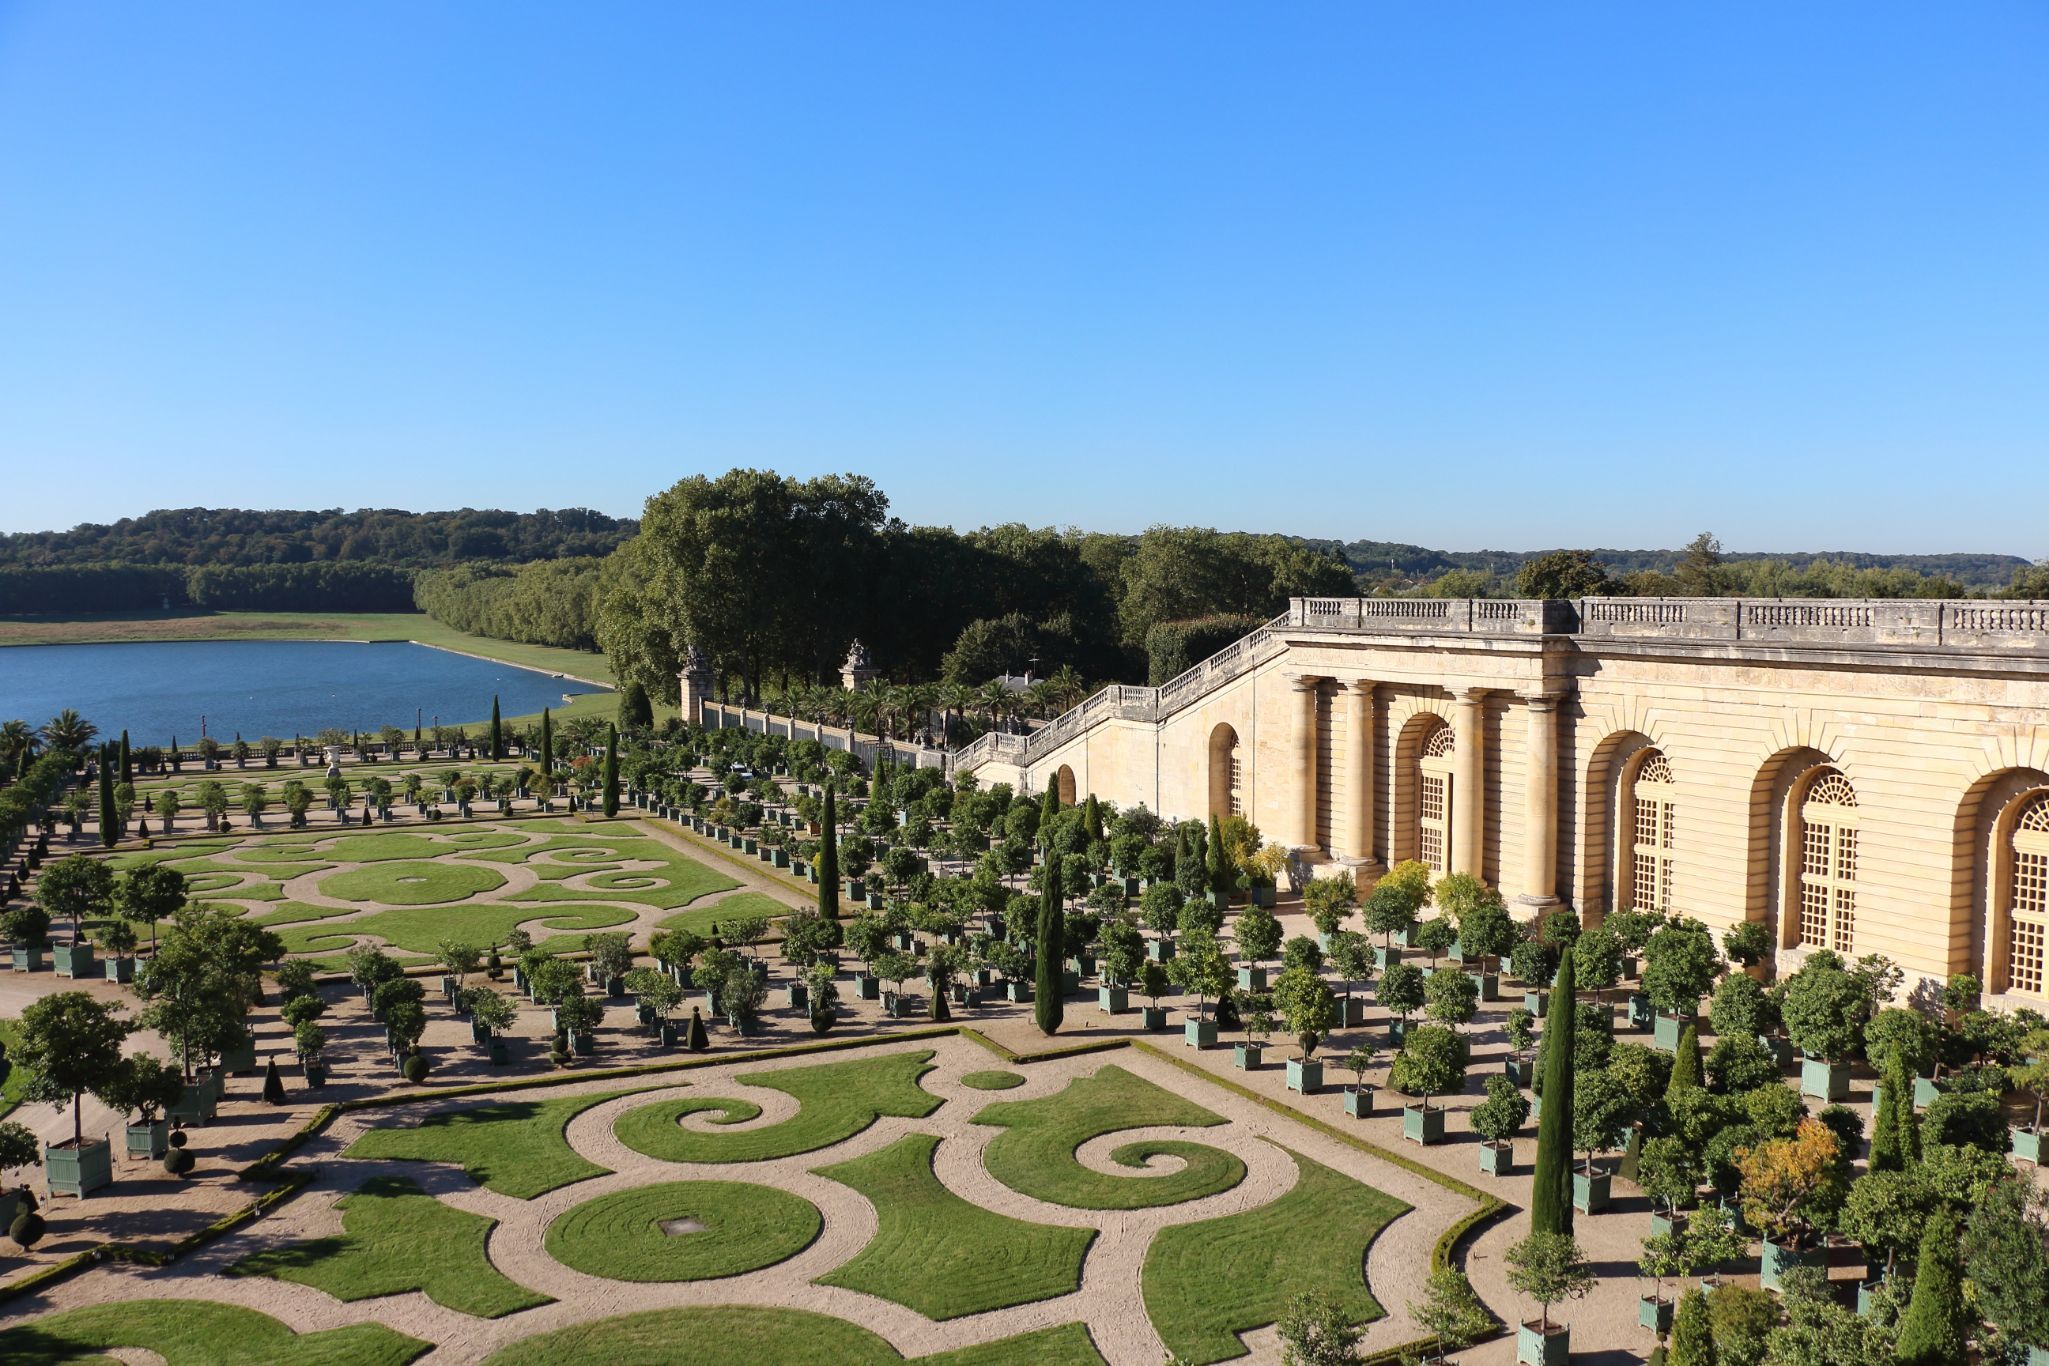 凡尔赛宫花园最美图片